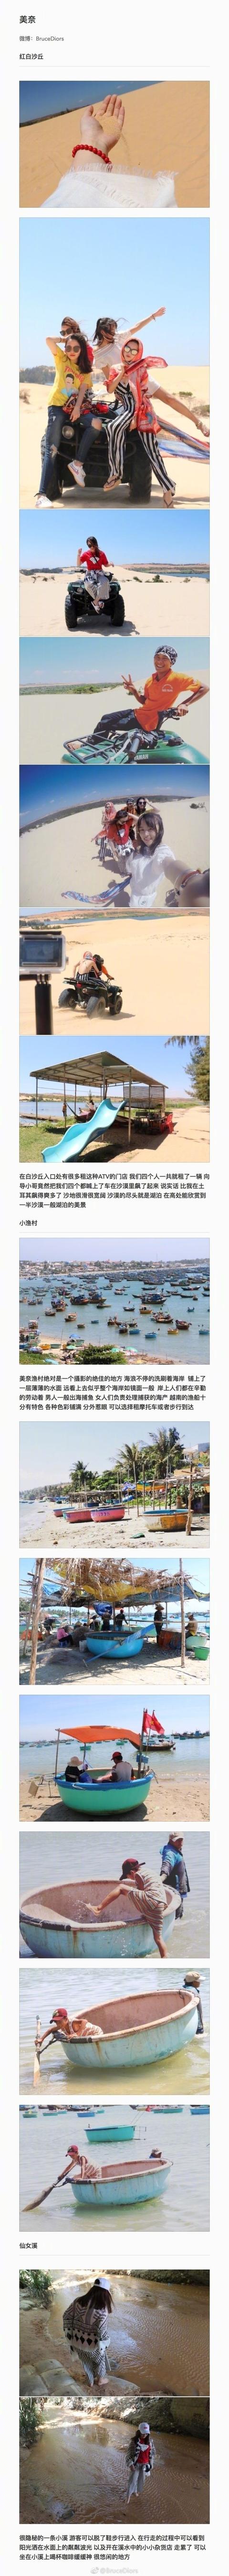 【旅游】妹纸越南自由行攻略纯干货版！